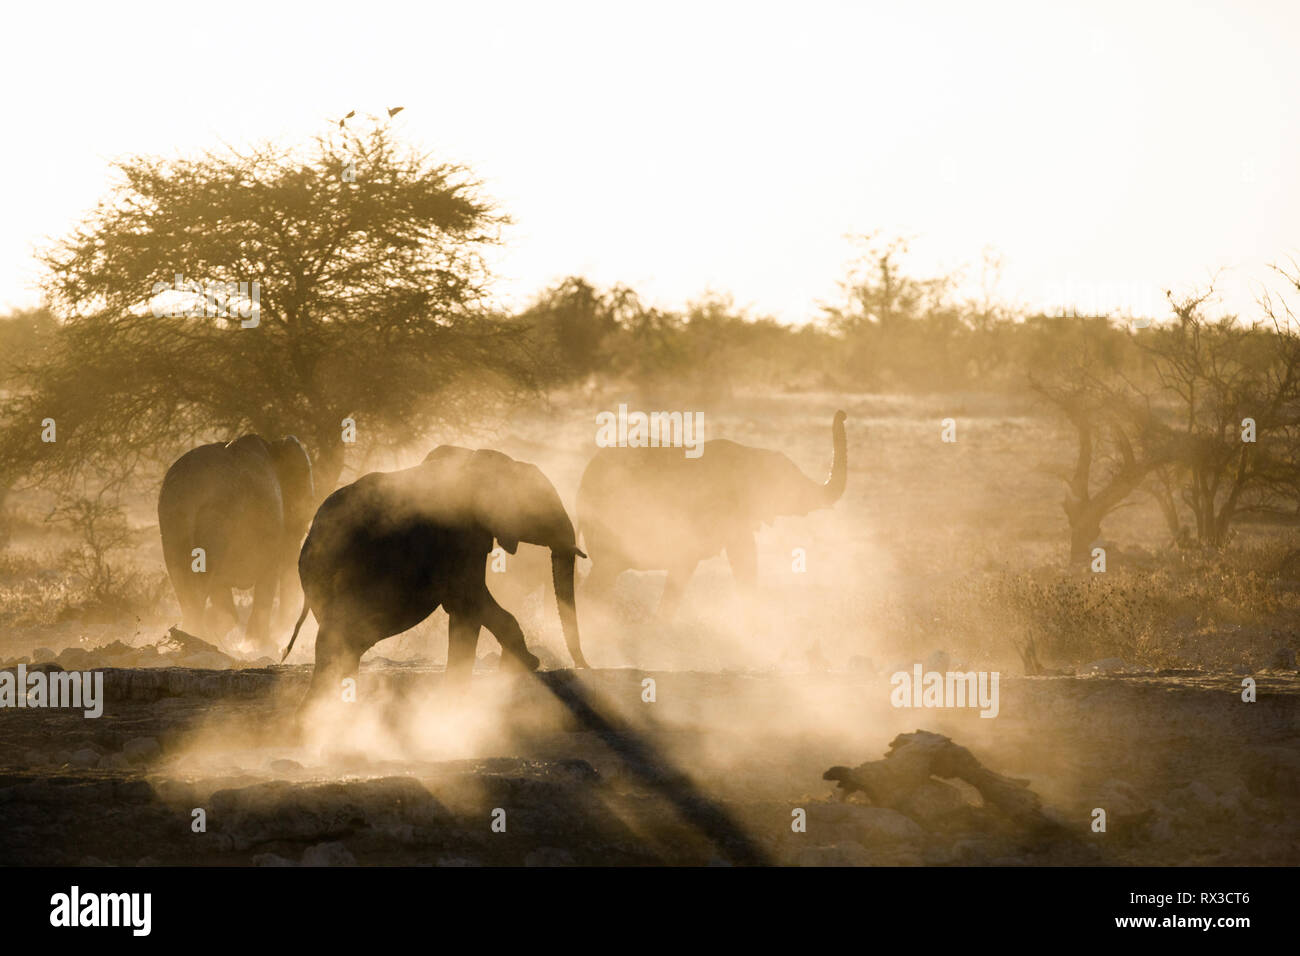 Staub ist gelb mit der untergehenden Sonne gedreht und zeigt die Silhouette eines Elefanten. Stockfoto